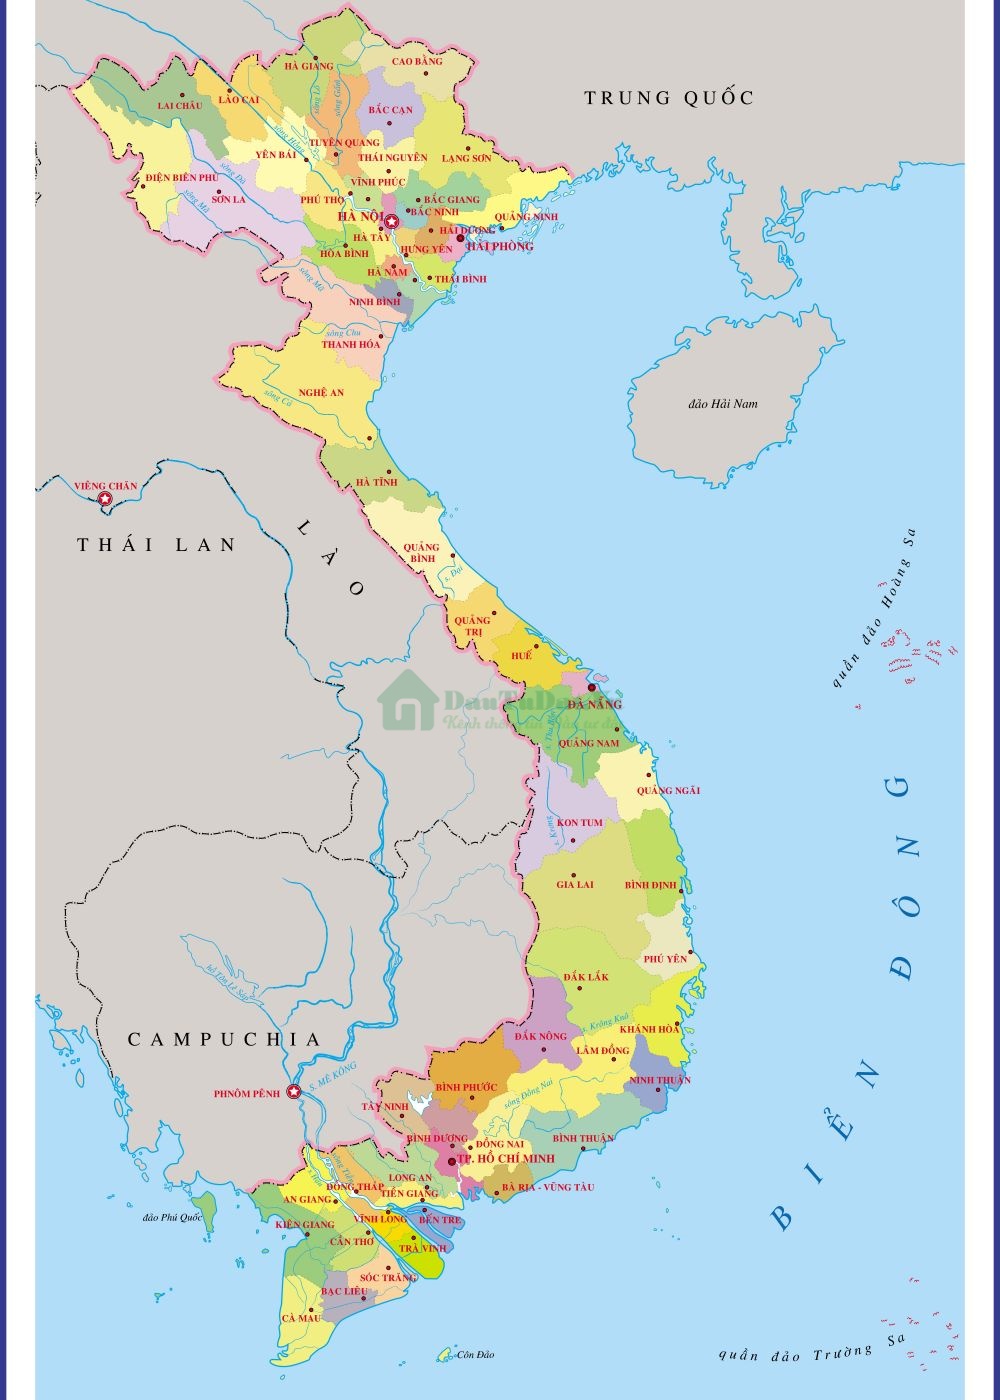 Bản đồ Việt Nam chi tiết nhất 2022 đã được cập nhập với sự đổi mới và tích hợp những công nghệ tiên tiến. Với đầy đủ thông tin, từ những thành phố lớn đến những làng quê, từ các tuyến đường đến các dãy núi rừng, từ các khu công nghiệp đến làng nghề, tất cả các chi tiết đều được cập nhât đầy đủ và chính sác. Hãy khám phá ngay hôm nay để mang lại cho bạn những trải nghiệm tuyệt vời về quê hương Việt Nam.